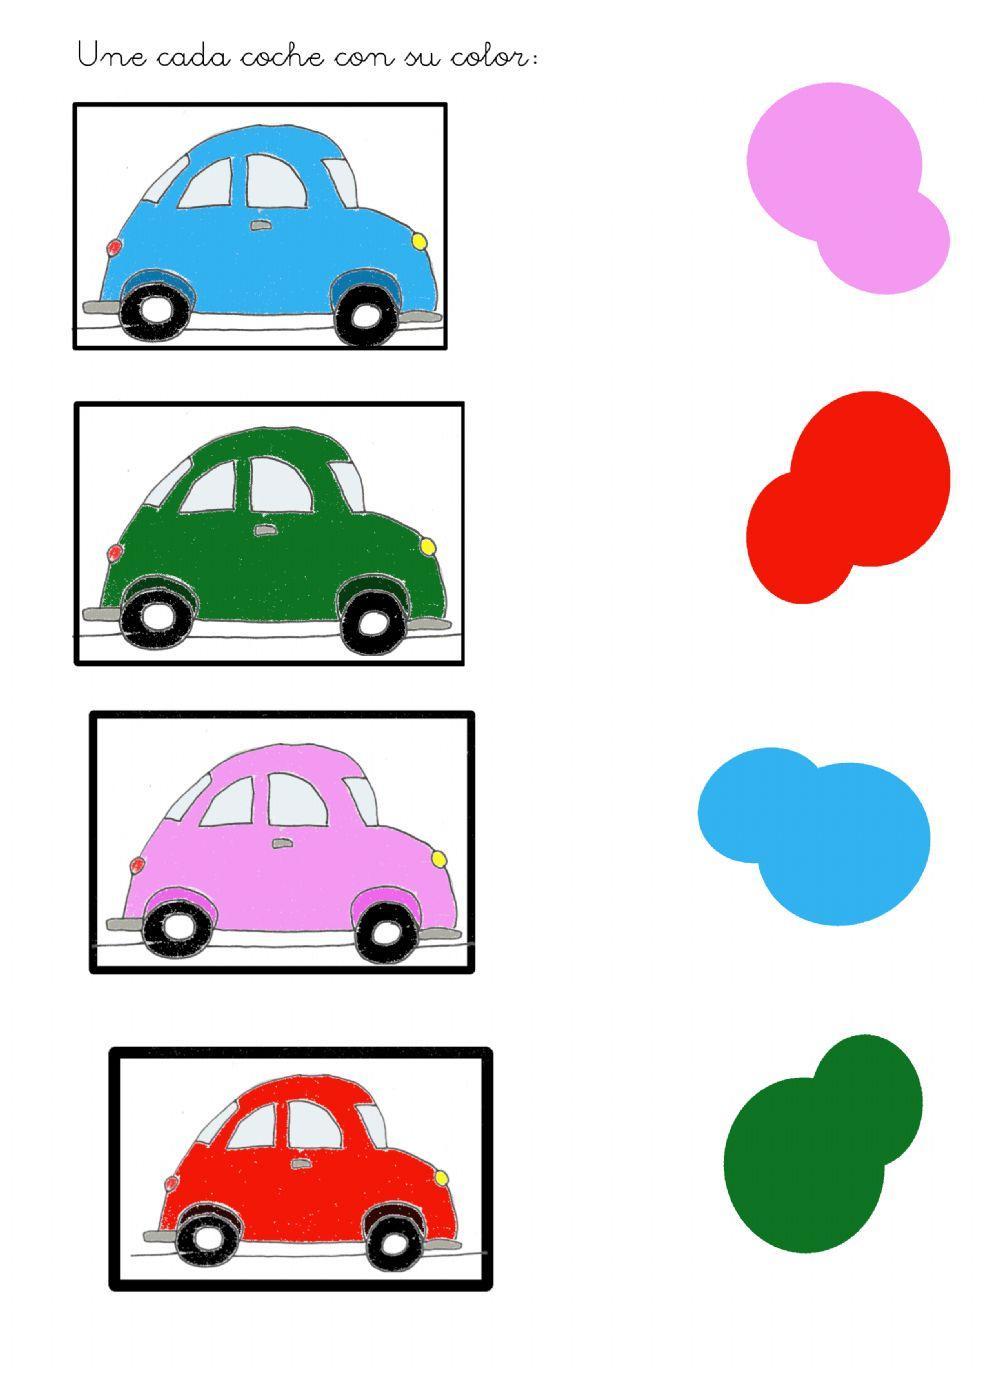 Une cada coche con su color